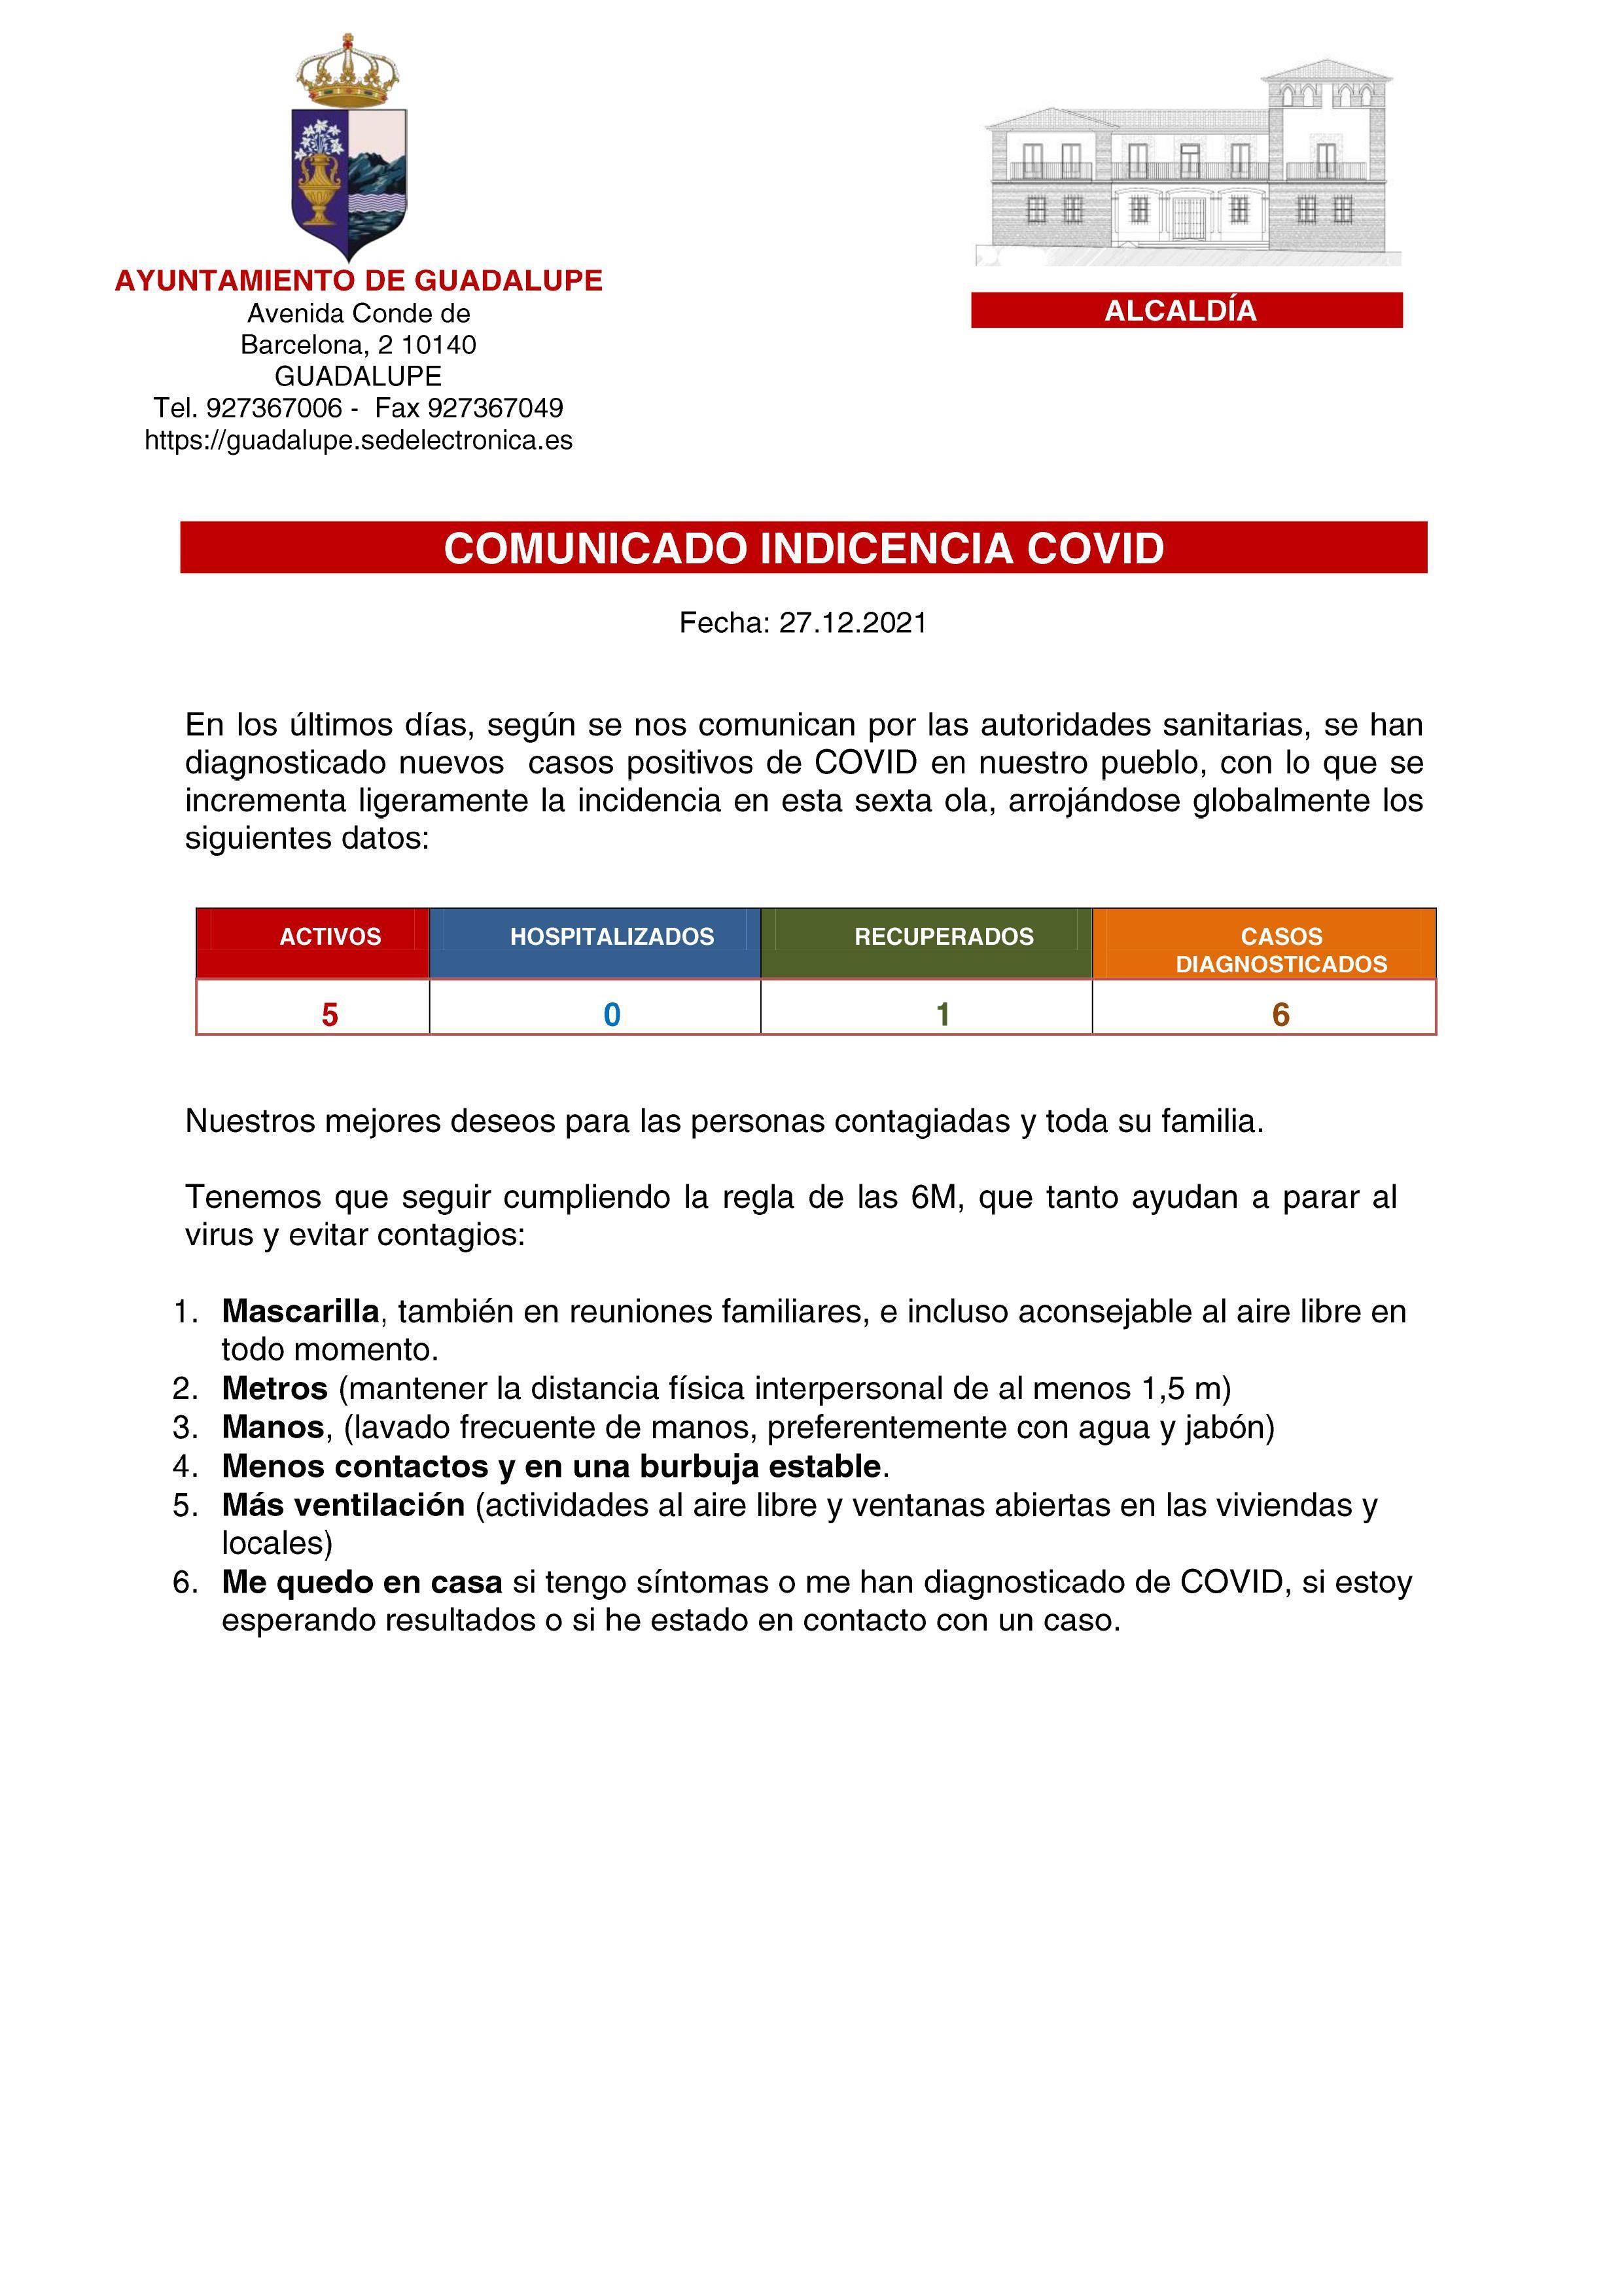 5 casos positivos activos de COVID-19 (diciembre 2021) - Guadalupe (Cáceres)